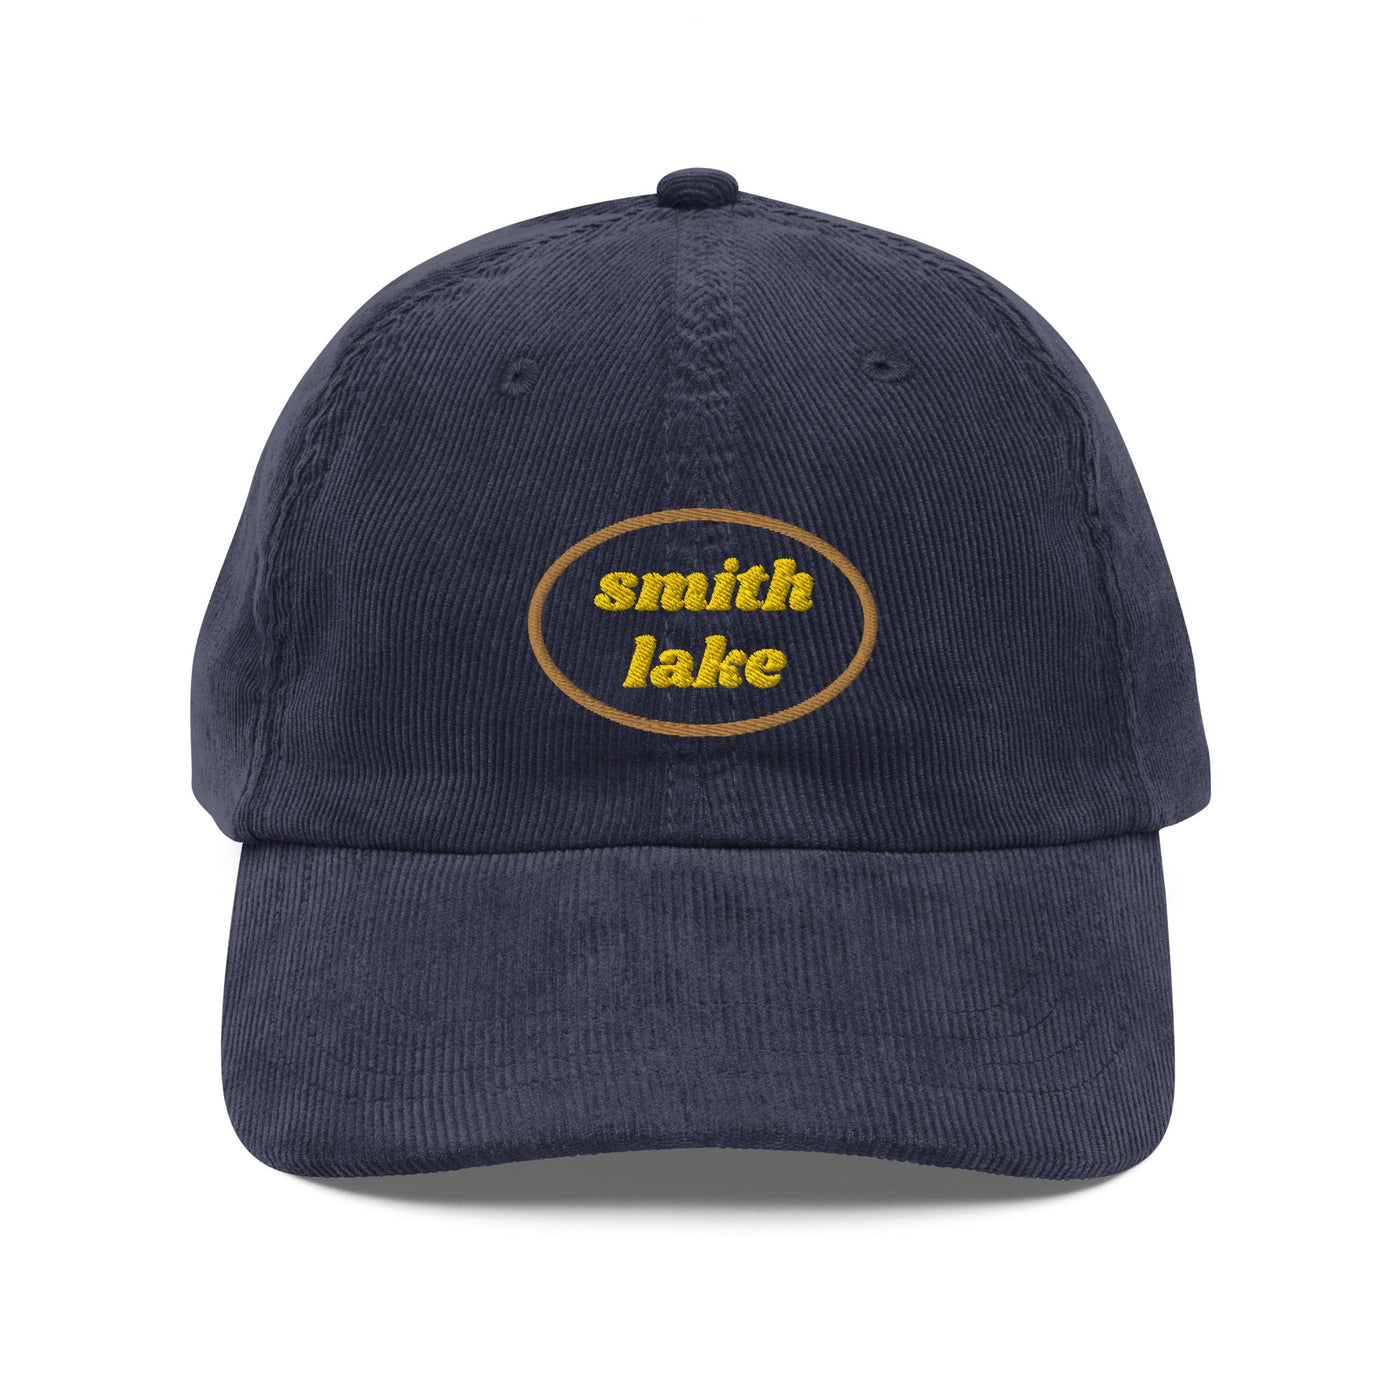 Smith Lake Vintage Corduroy Cap - Ezra's Clothing